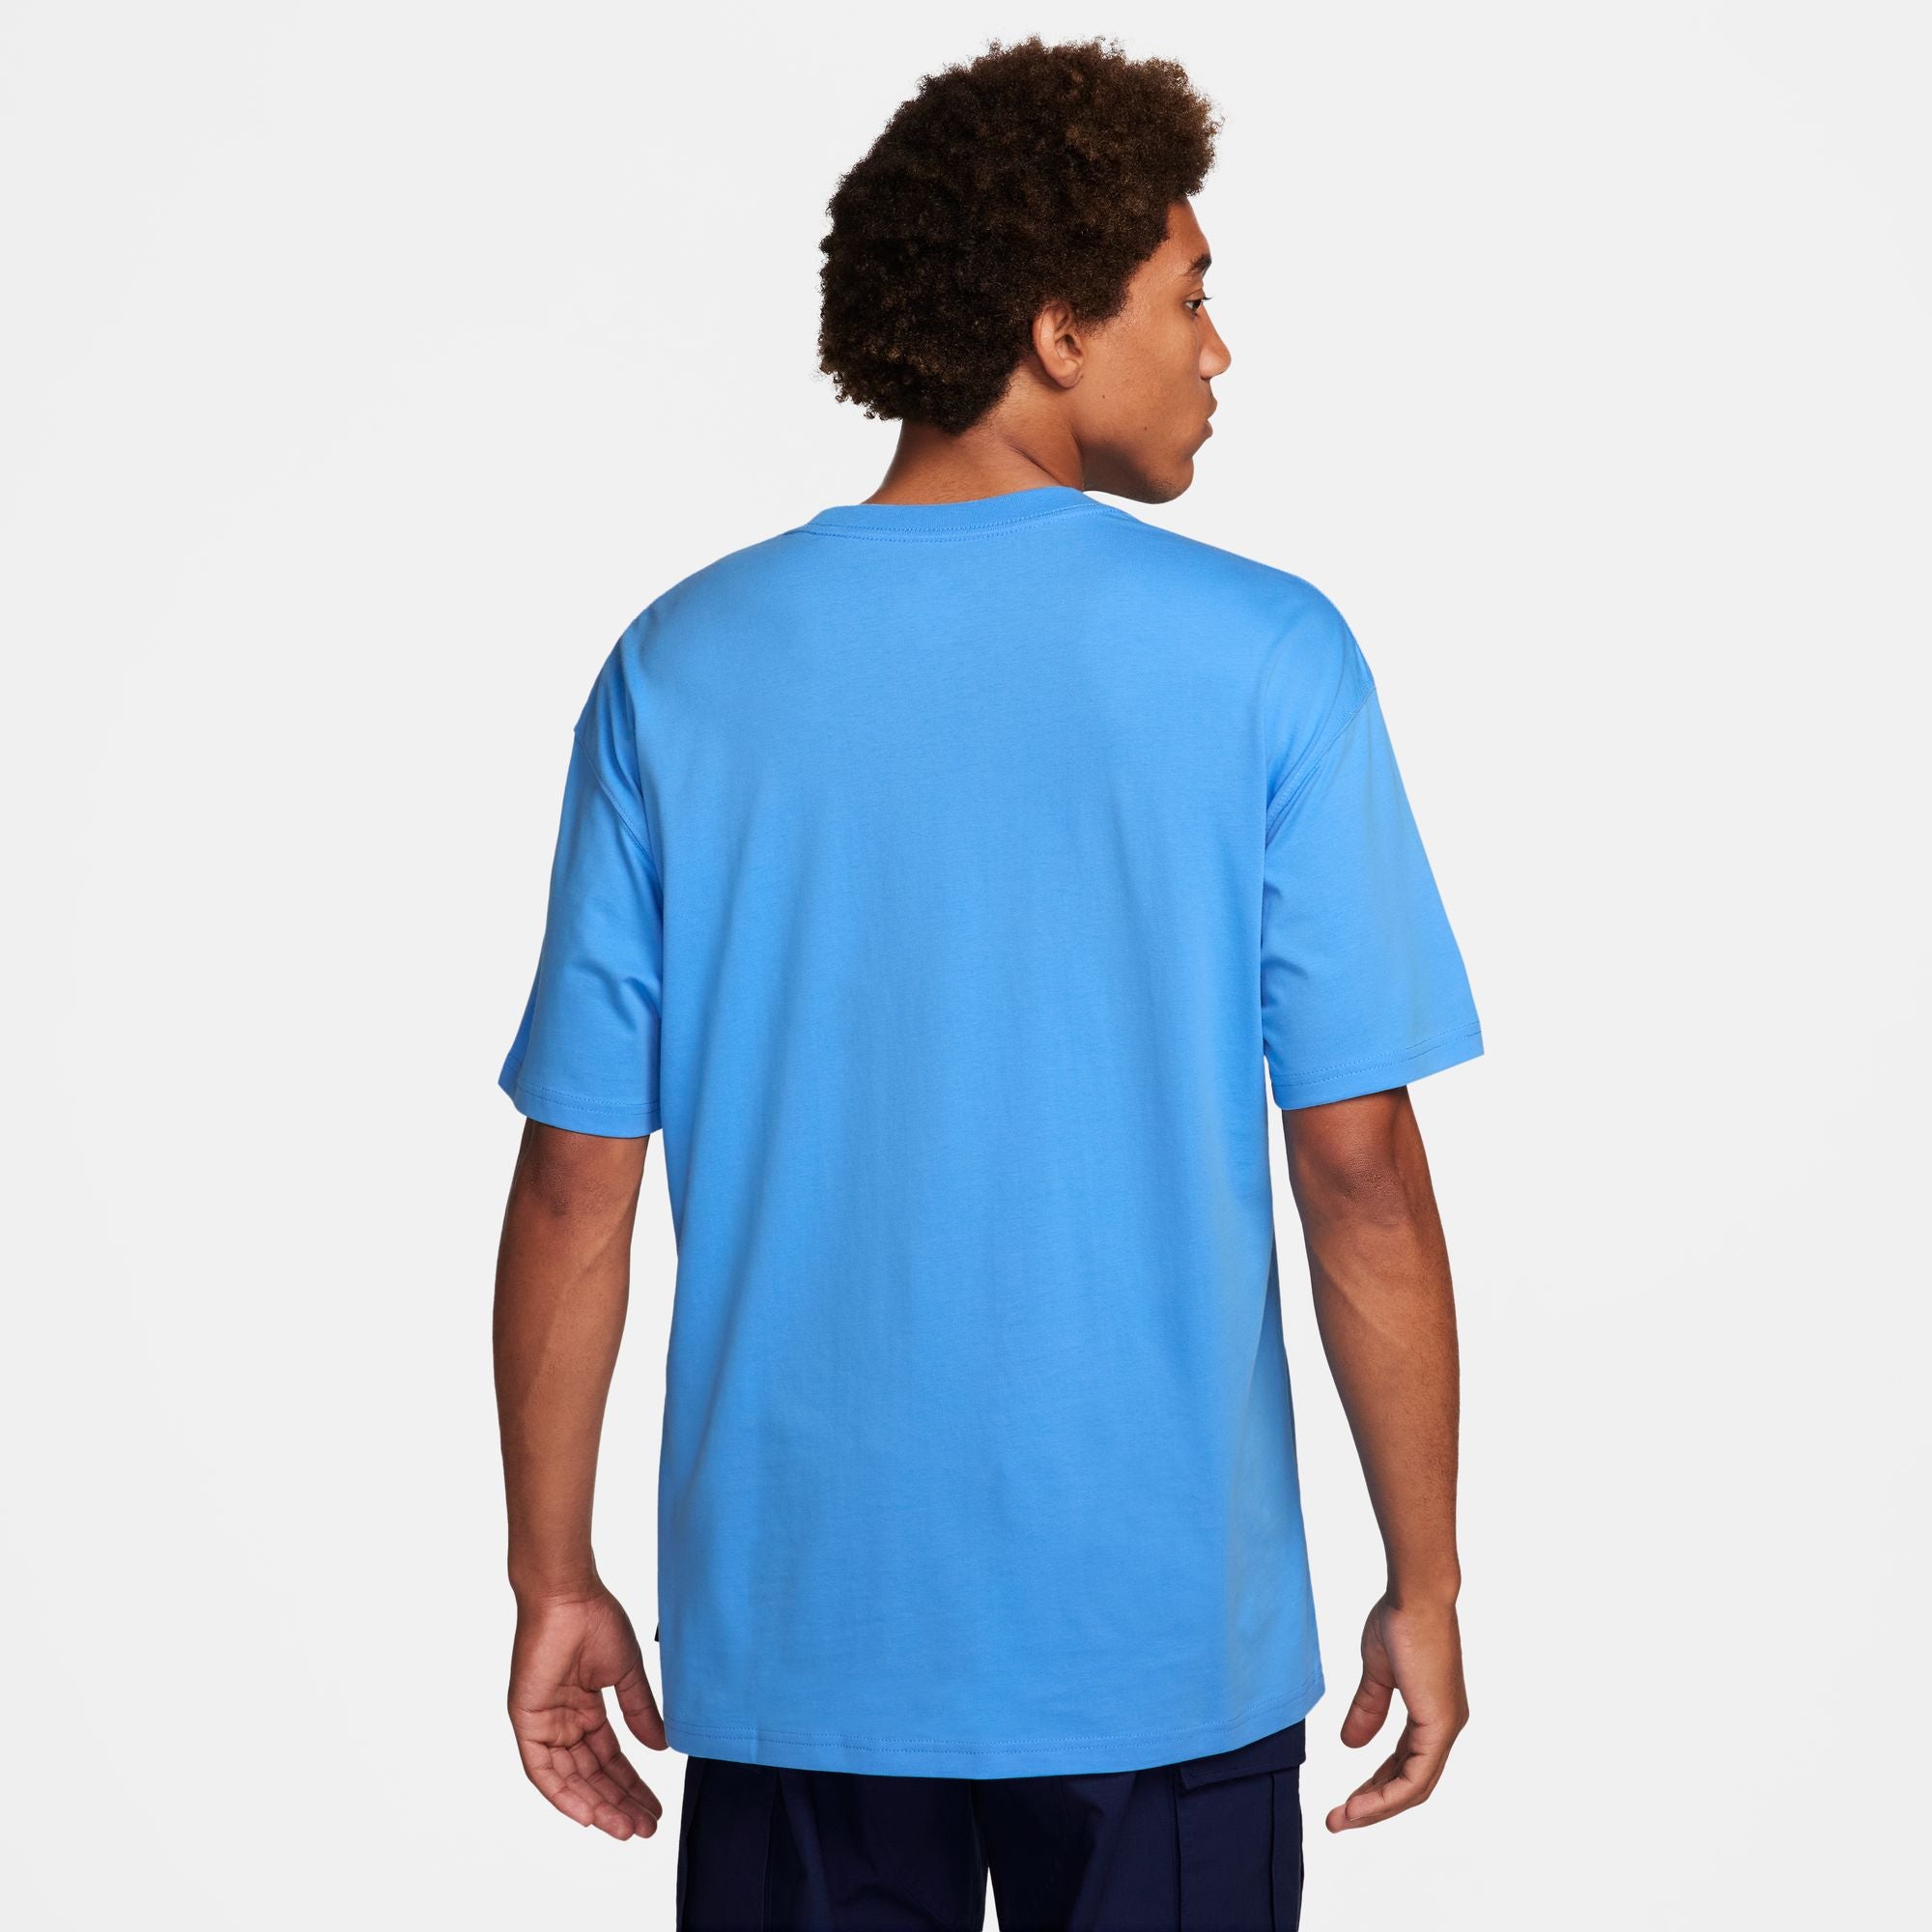 University Blue Nike SB Logo T-shirt Back